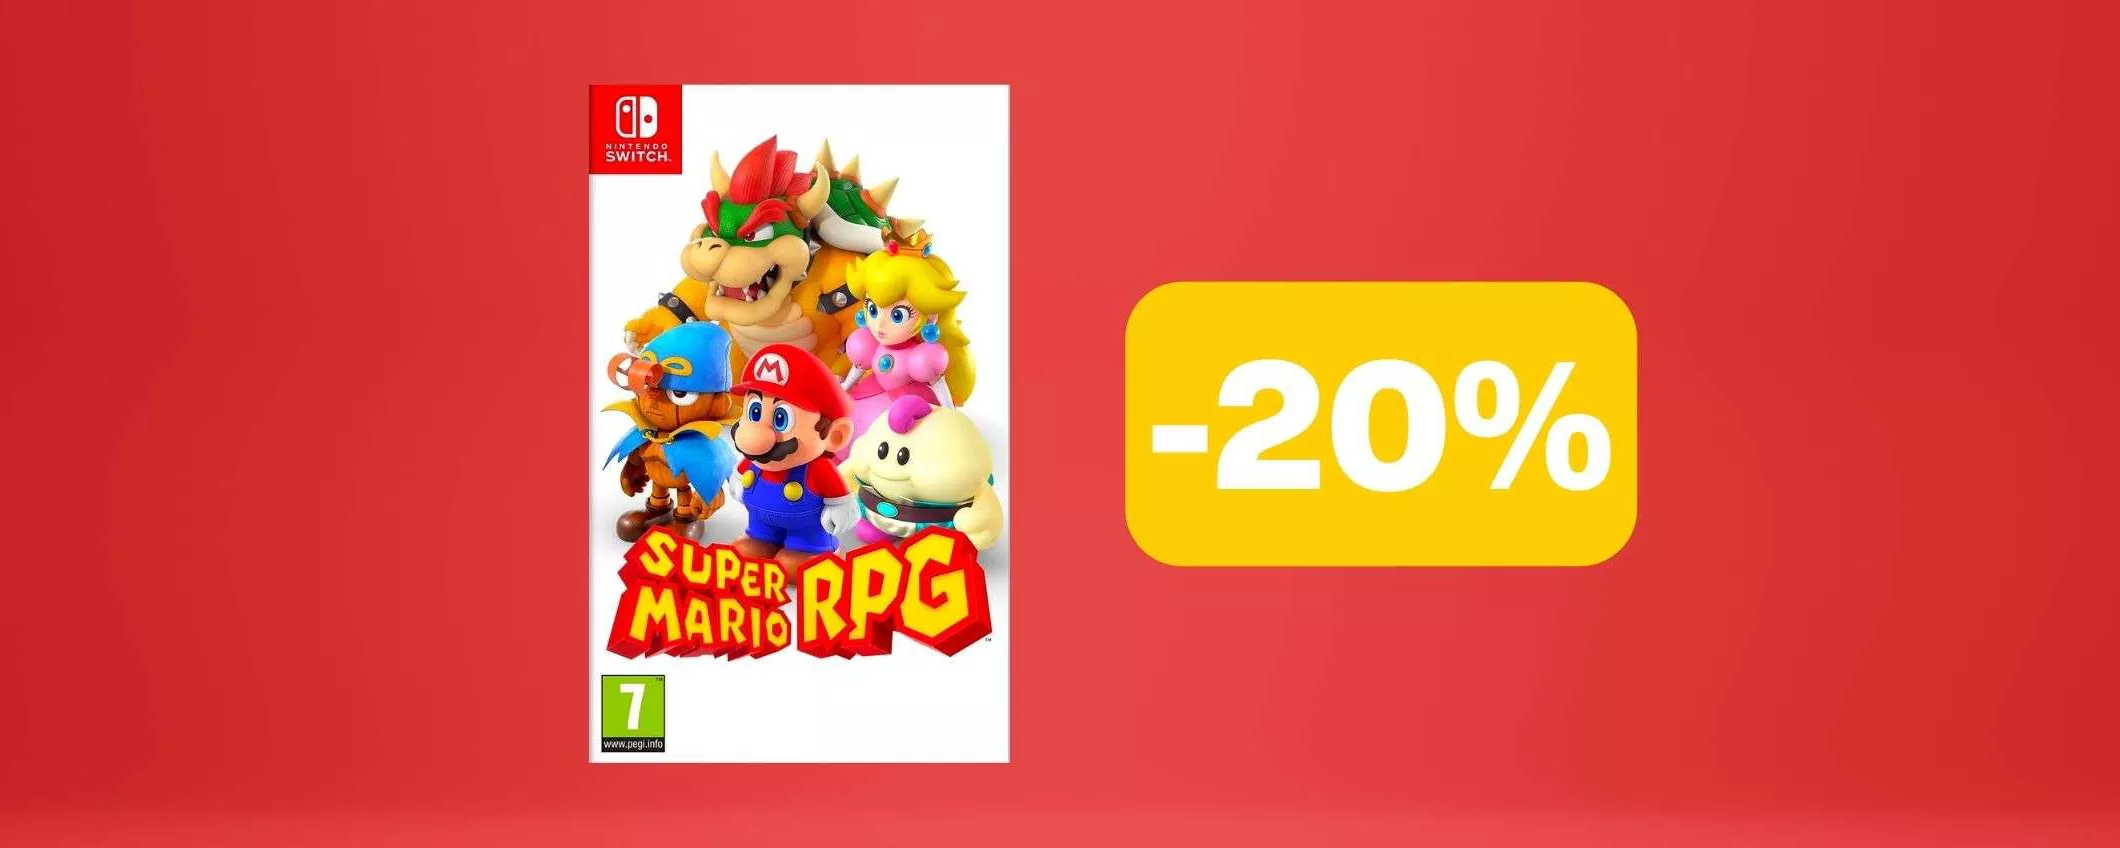 Super Mario RPG per Nintendo Switch è in sconto su Amazon (-20%)